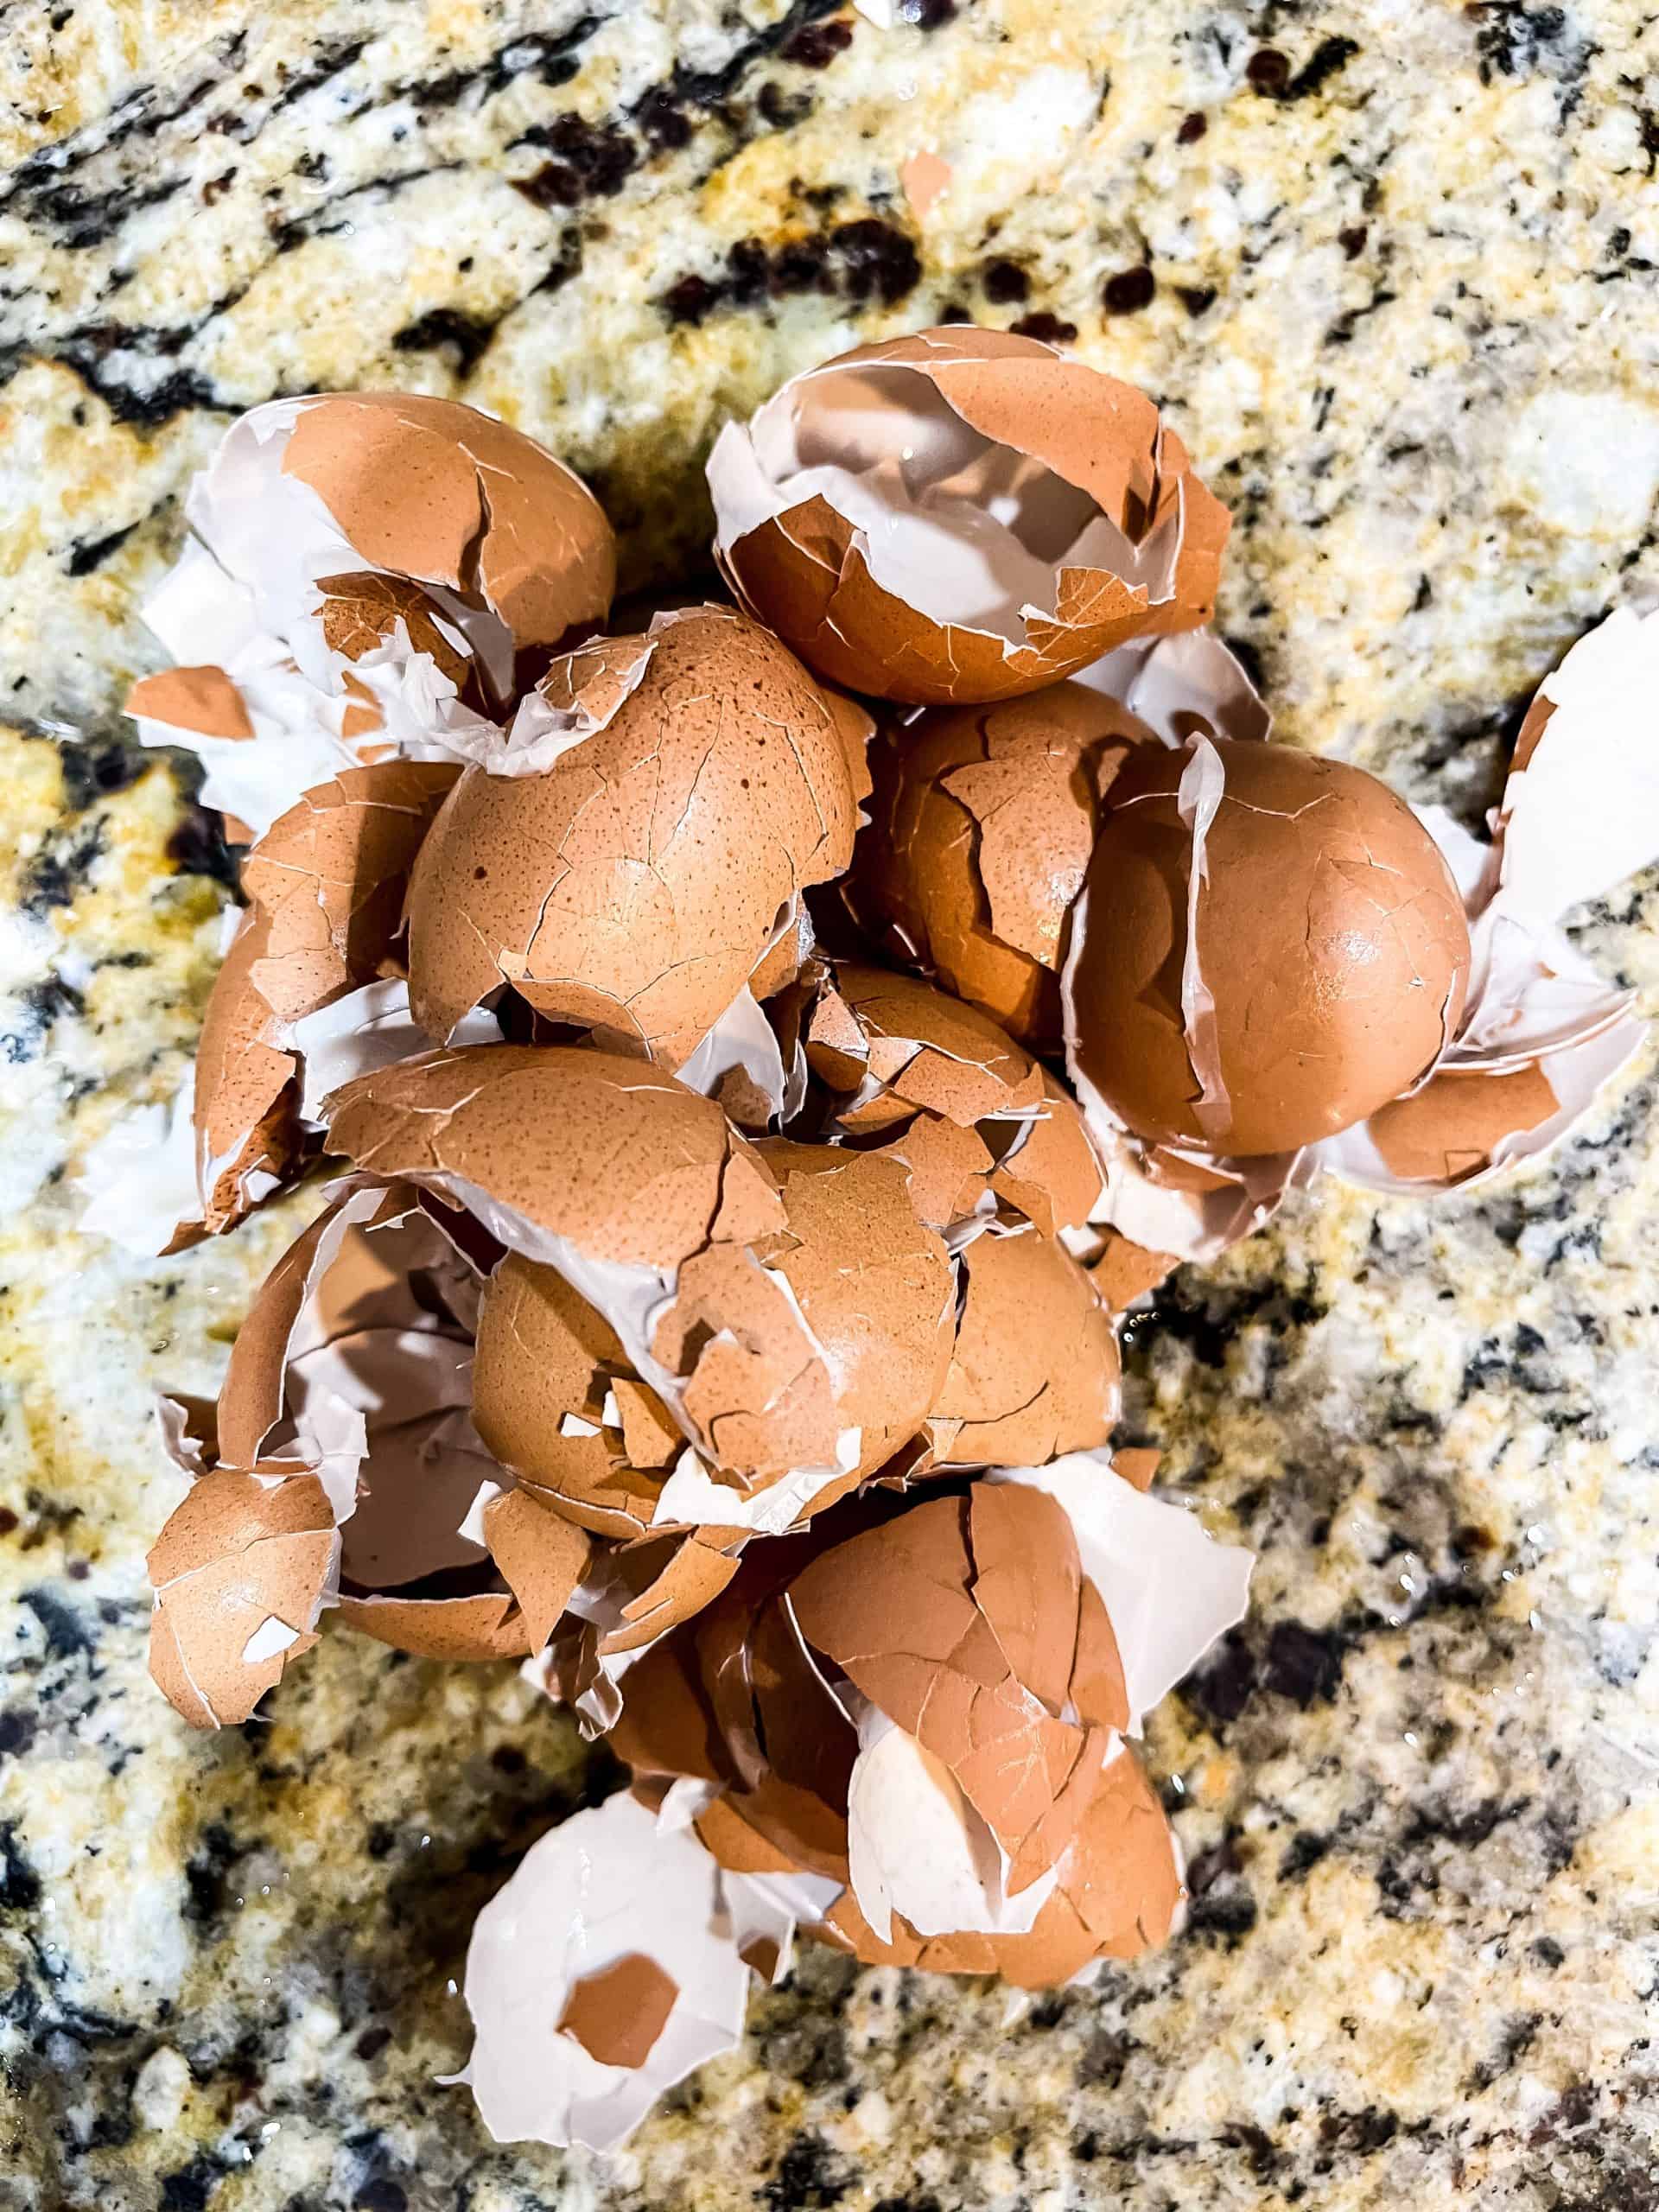 Peeled egg shells